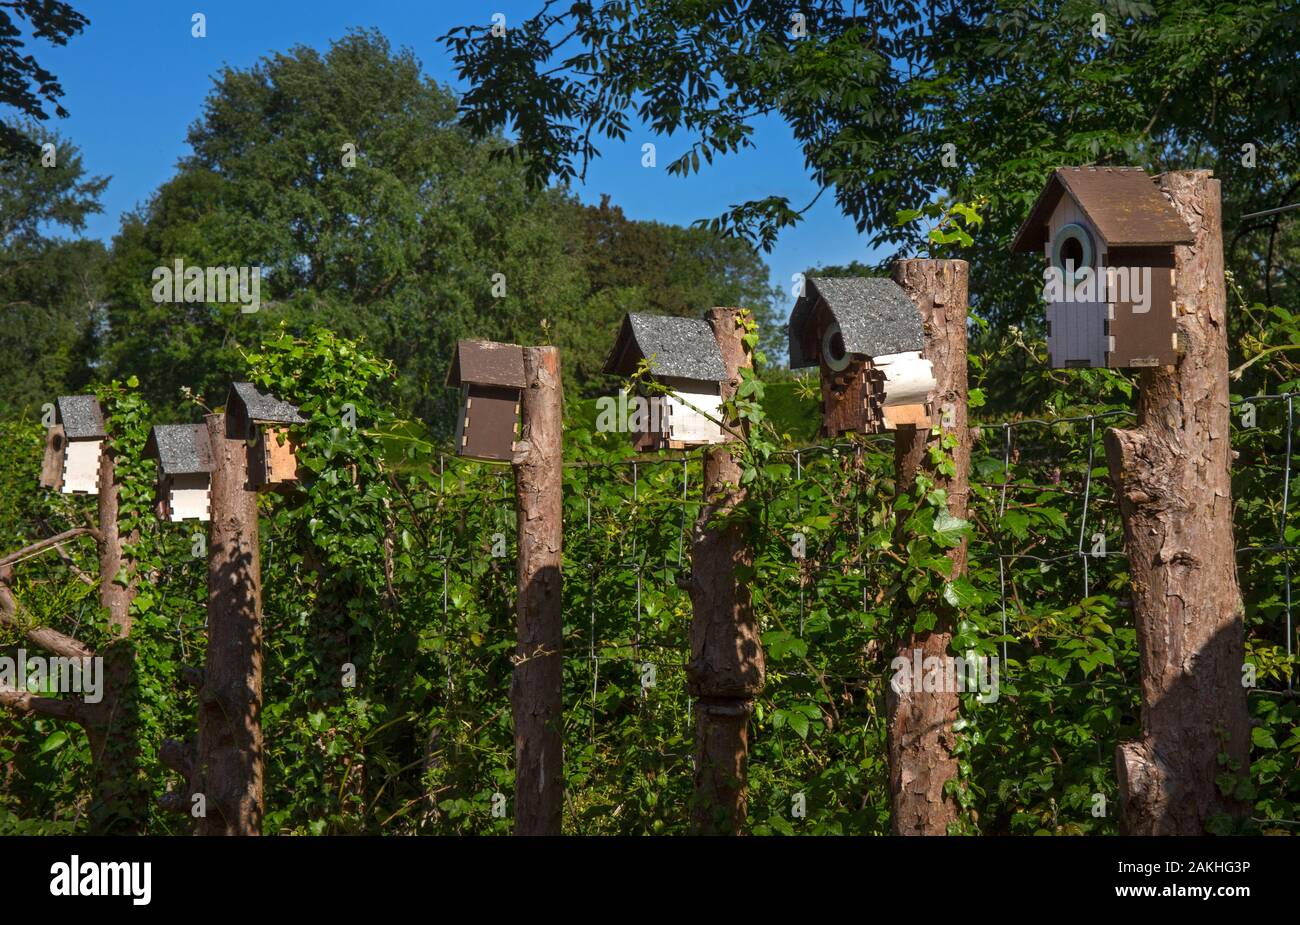 Holz-Vogelkisten im englischen Garten, England Stockfoto